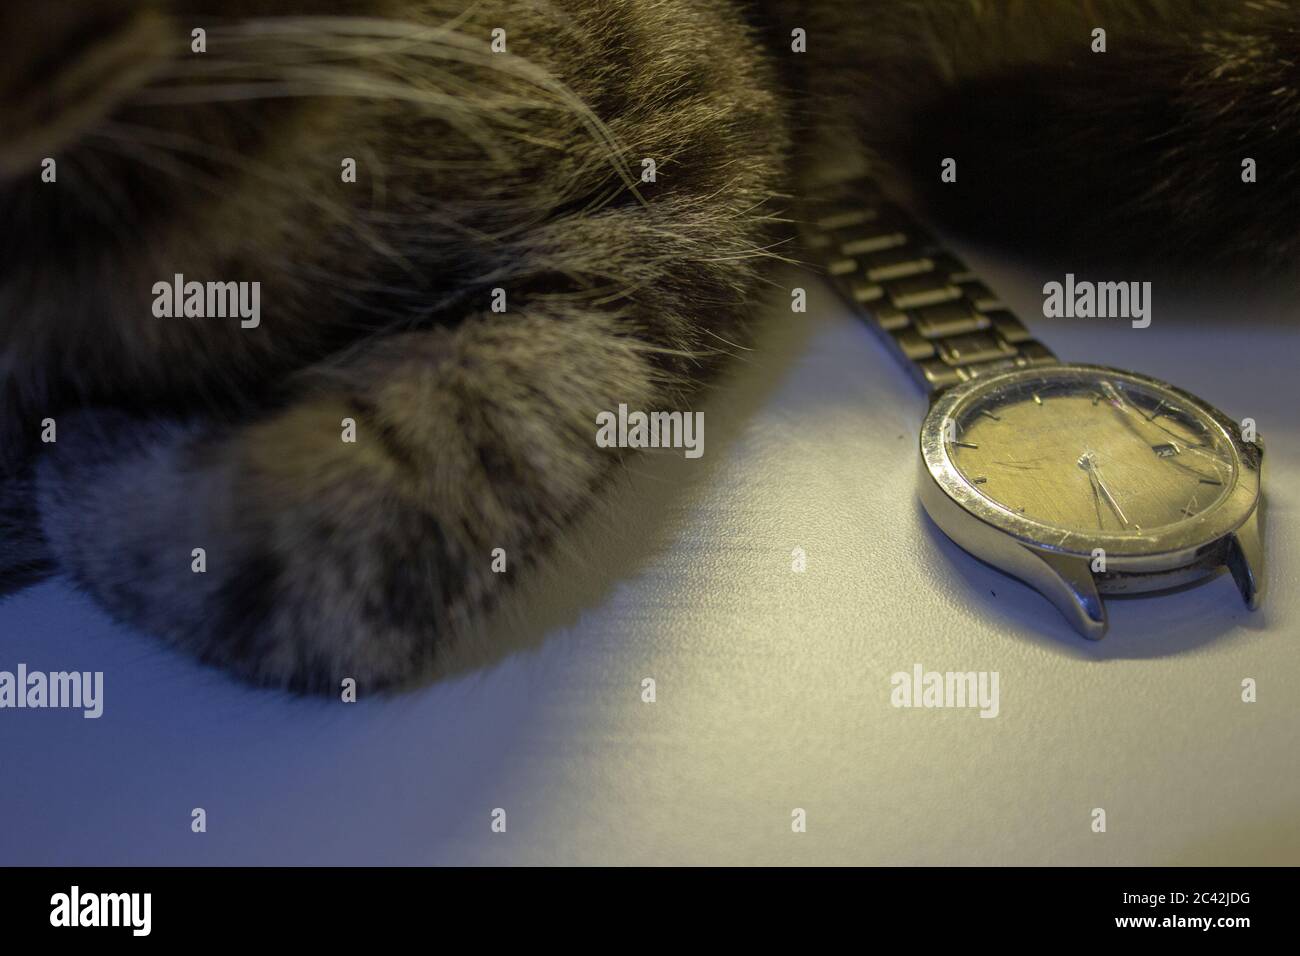 Orologio da polso rotto, con il suo vetro frantumato e danneggiato  bracciale, accanto ad un gatto Foto stock - Alamy